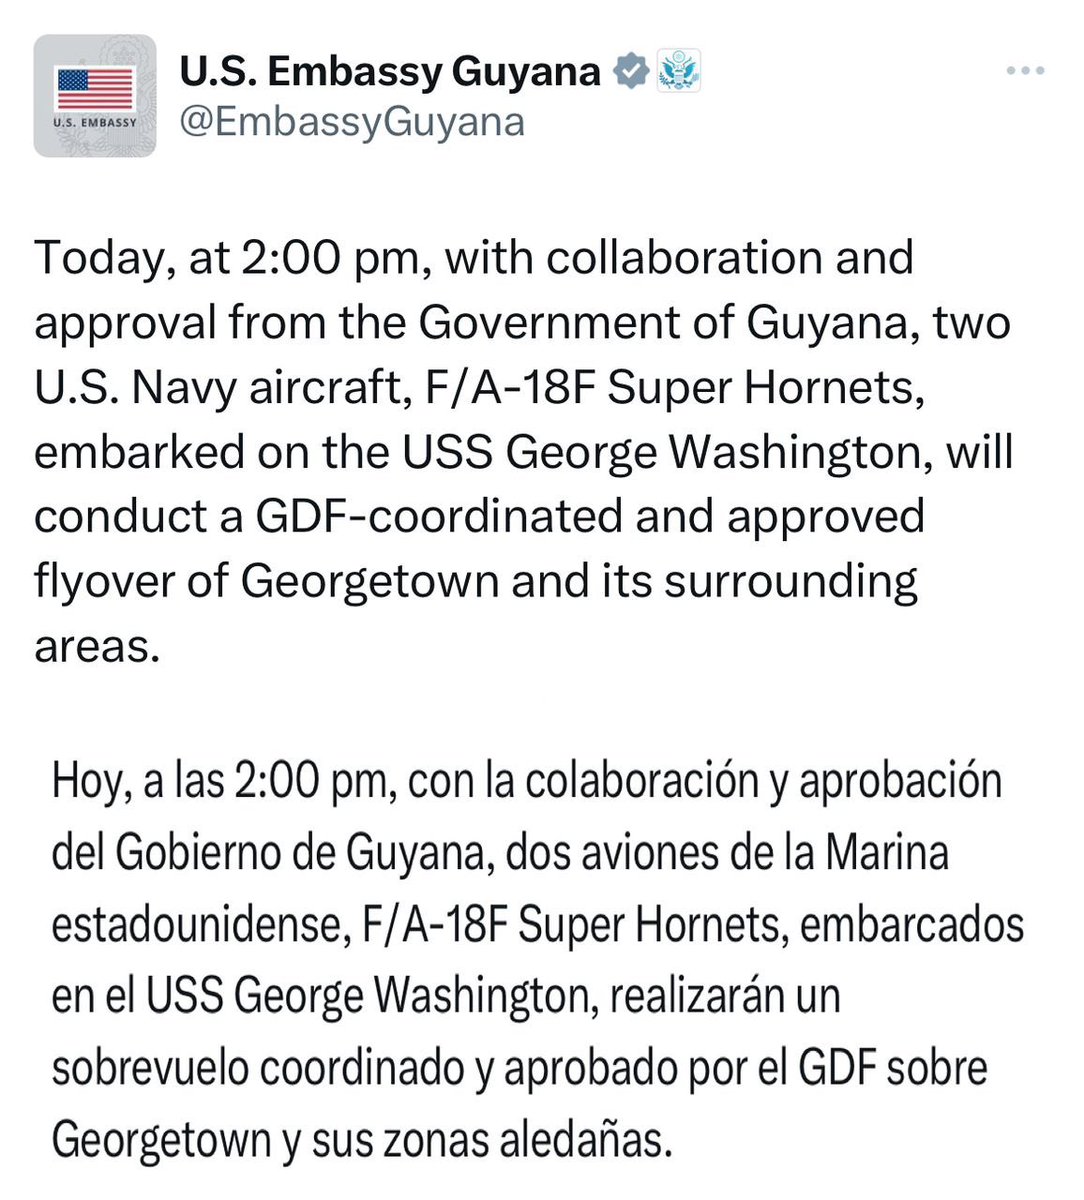 Ya advertíamos sobre la amenaza a la paz regional que representa la presencia del portaaviones USS George Washington en el Caribe. Ahora anuncian el despliegue de aviones F-18 para sobrevolar “Georgetown y sus alrededores”. La Fuerza Armada Nacional Bolivariana rechaza…